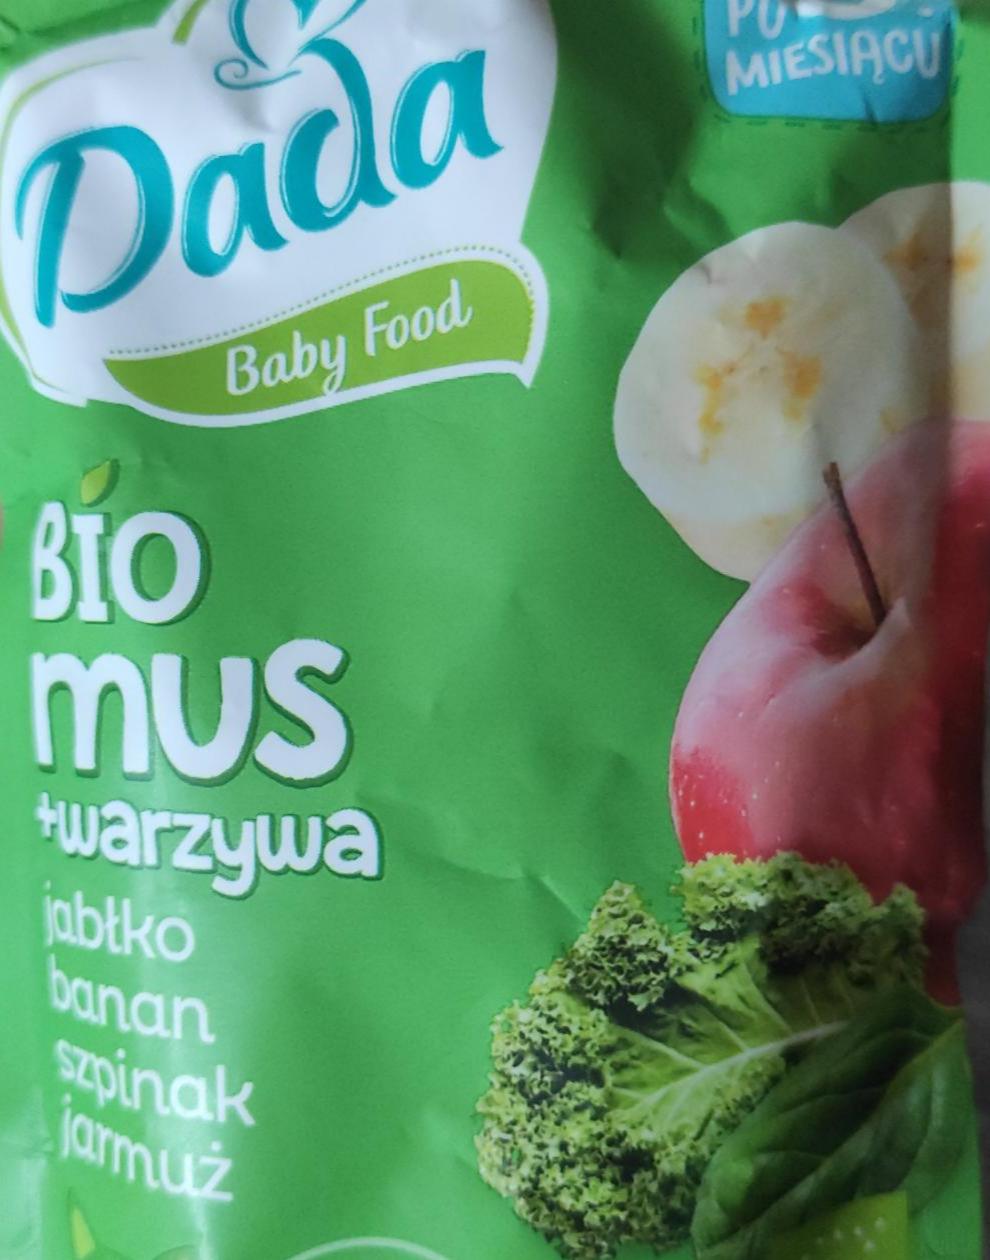 Zdjęcia - bio mus +warzywa jabłko banan szpinak jarmuż Dada